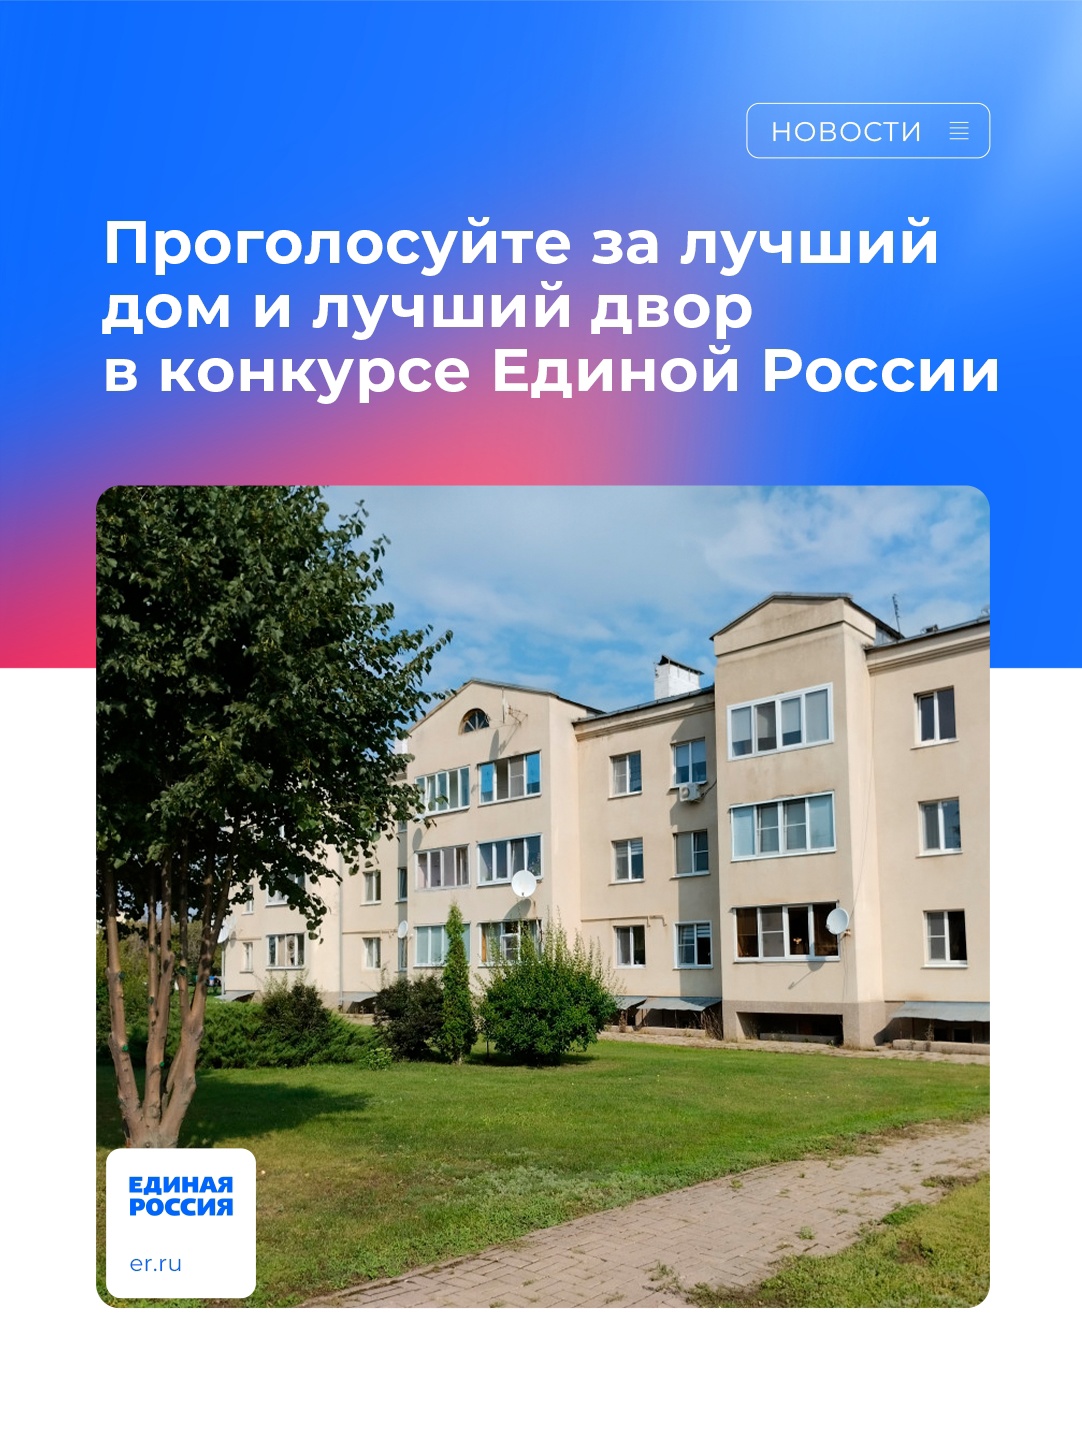 Проголосуйте за лучший дом и лучший двор в конкурсе Единой России.